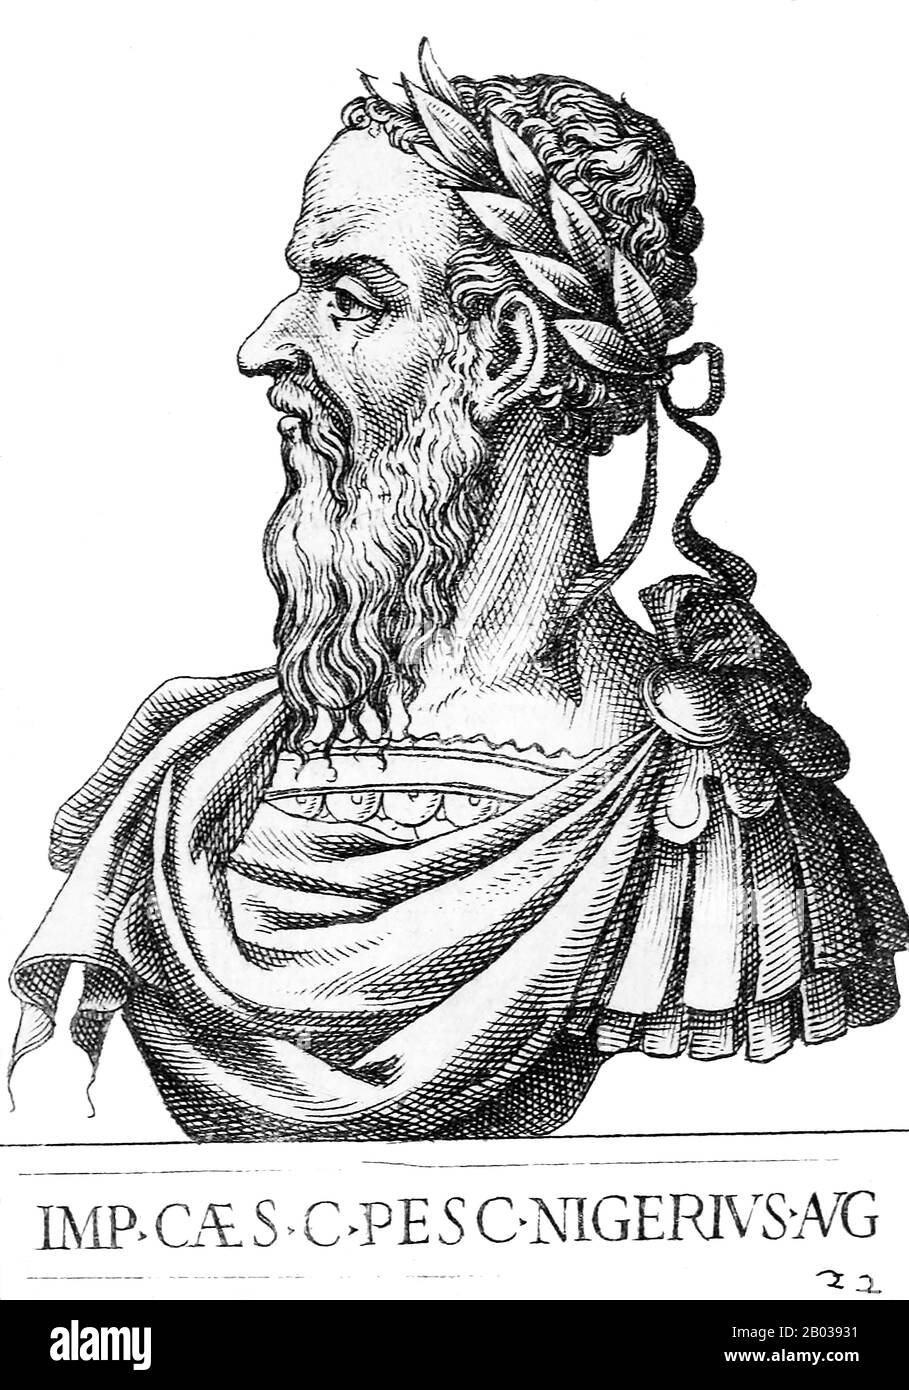 Pescenius Niger (135/140-194) est né dans une ancienne famille équestre italienne et a été le premier membre à devenir sénateur romain. Il a été nommé par Commodus pour être le légat impérial de la Syrie en 191, où il a servi quand les nouvelles sont venus du meurtre de Pertinax en 193 et de la mise aux enchères du trône impérial à Didius Julianus. Le Niger était une personnalité publique bien considérée, et les citoyens de Rome l'ont appelé à revenir à Rome et à revendiquer le titre de Julianus. Par conséquent, les légions orientales ont proclamé le Niger empereur en 193, le deuxième empereur à revendiquer le titre impérial après Sépimiu Banque D'Images